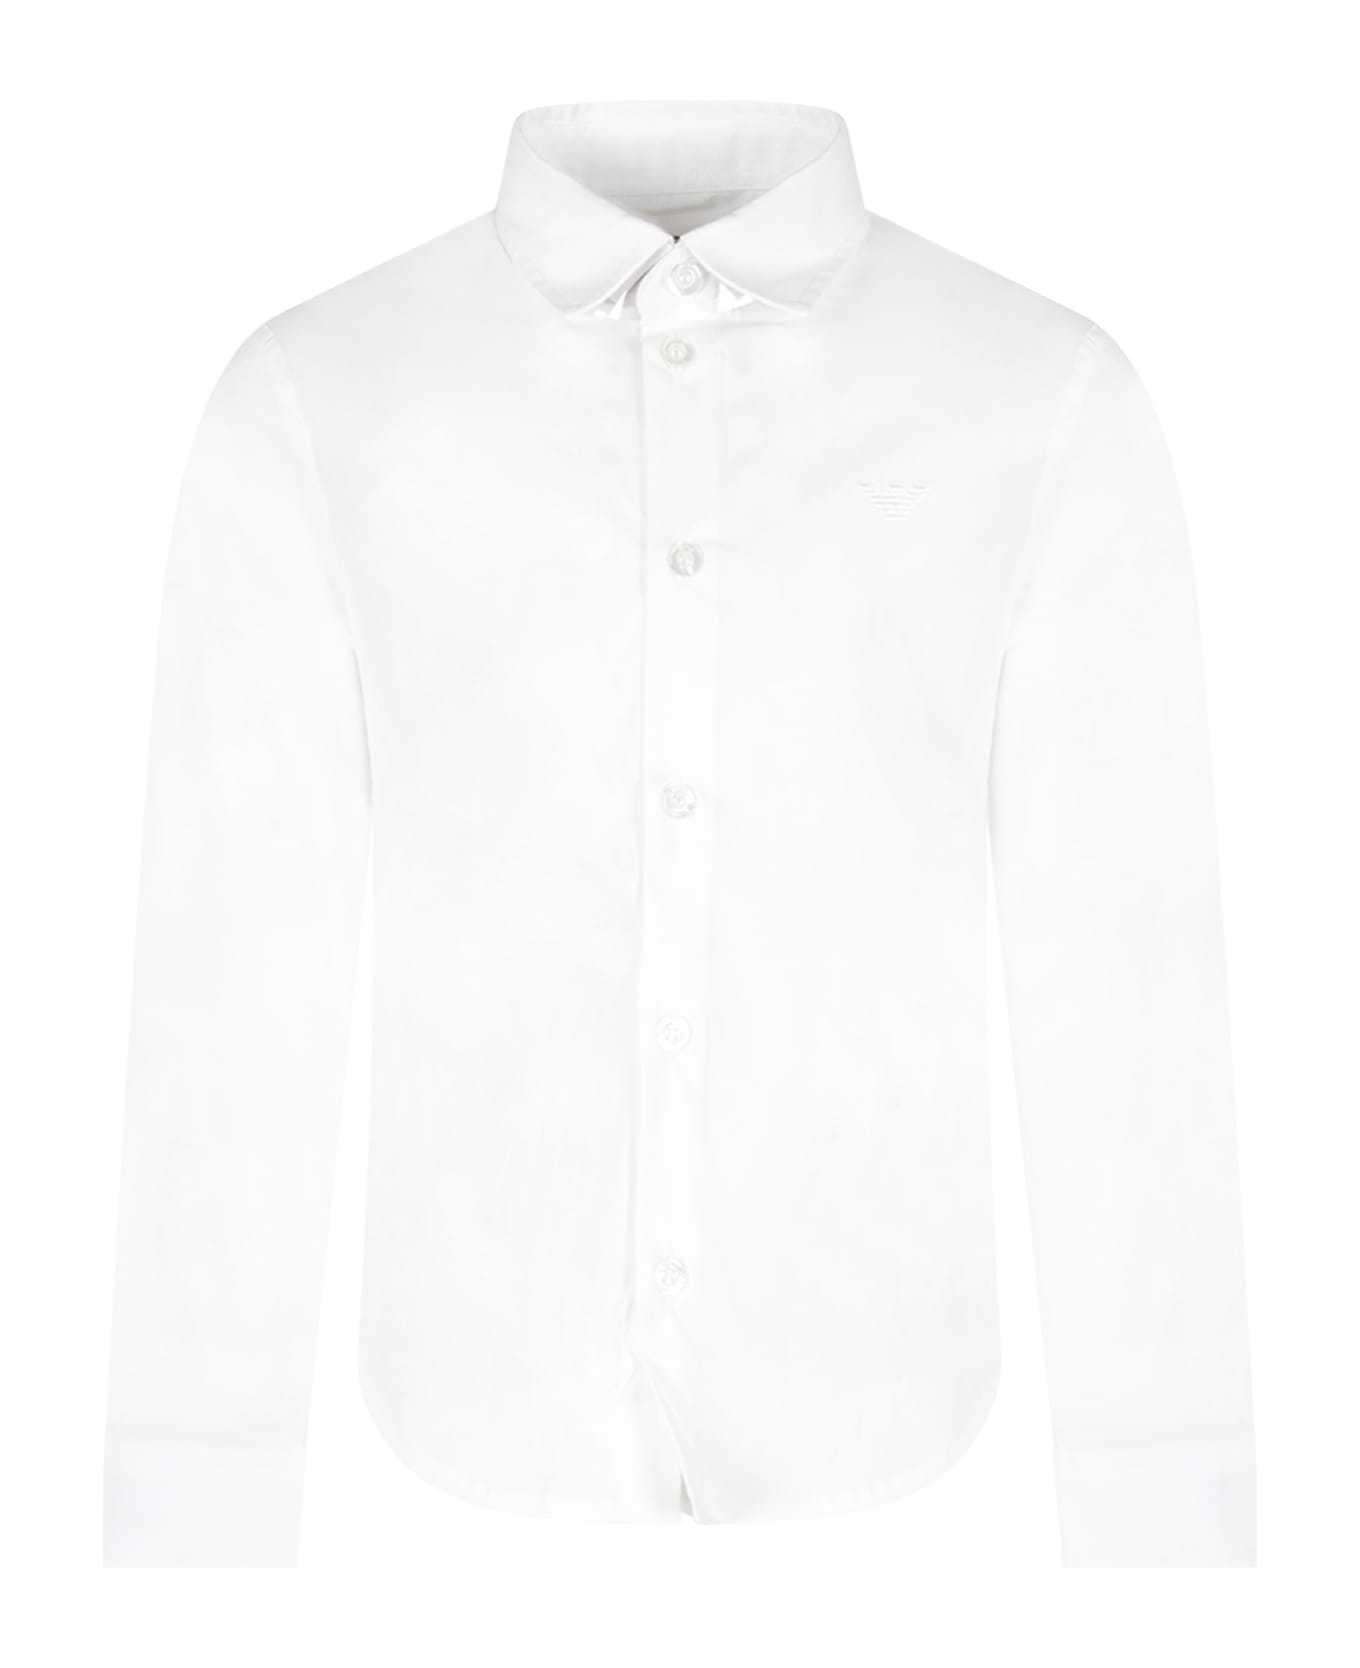 Emporio Armani White Shirt For Boy With Iconic Eagle - White